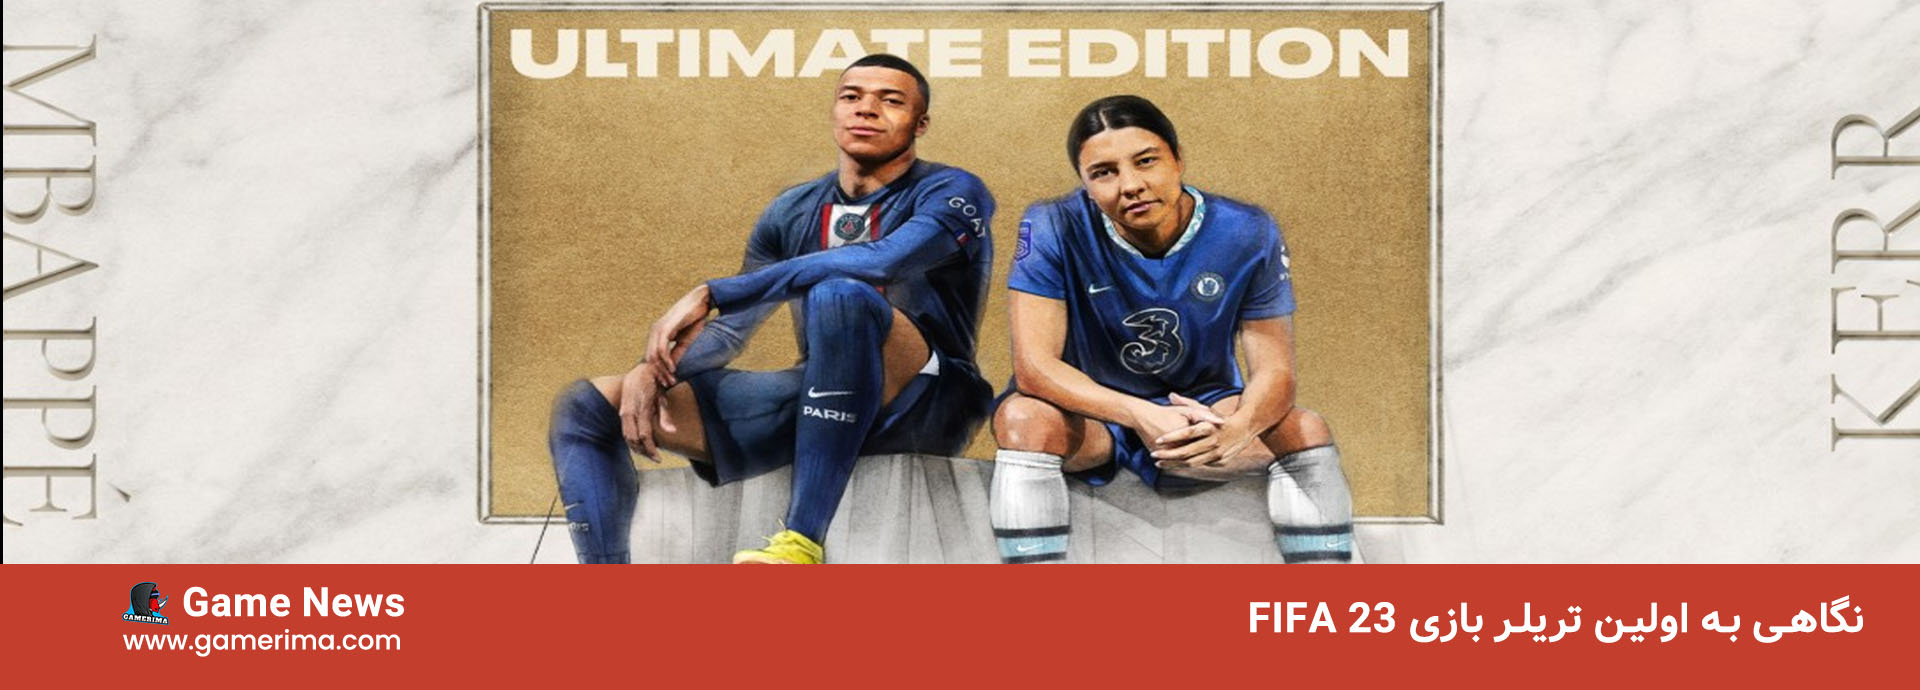 نگاهی به اولین تریلر بازی FIFA 23